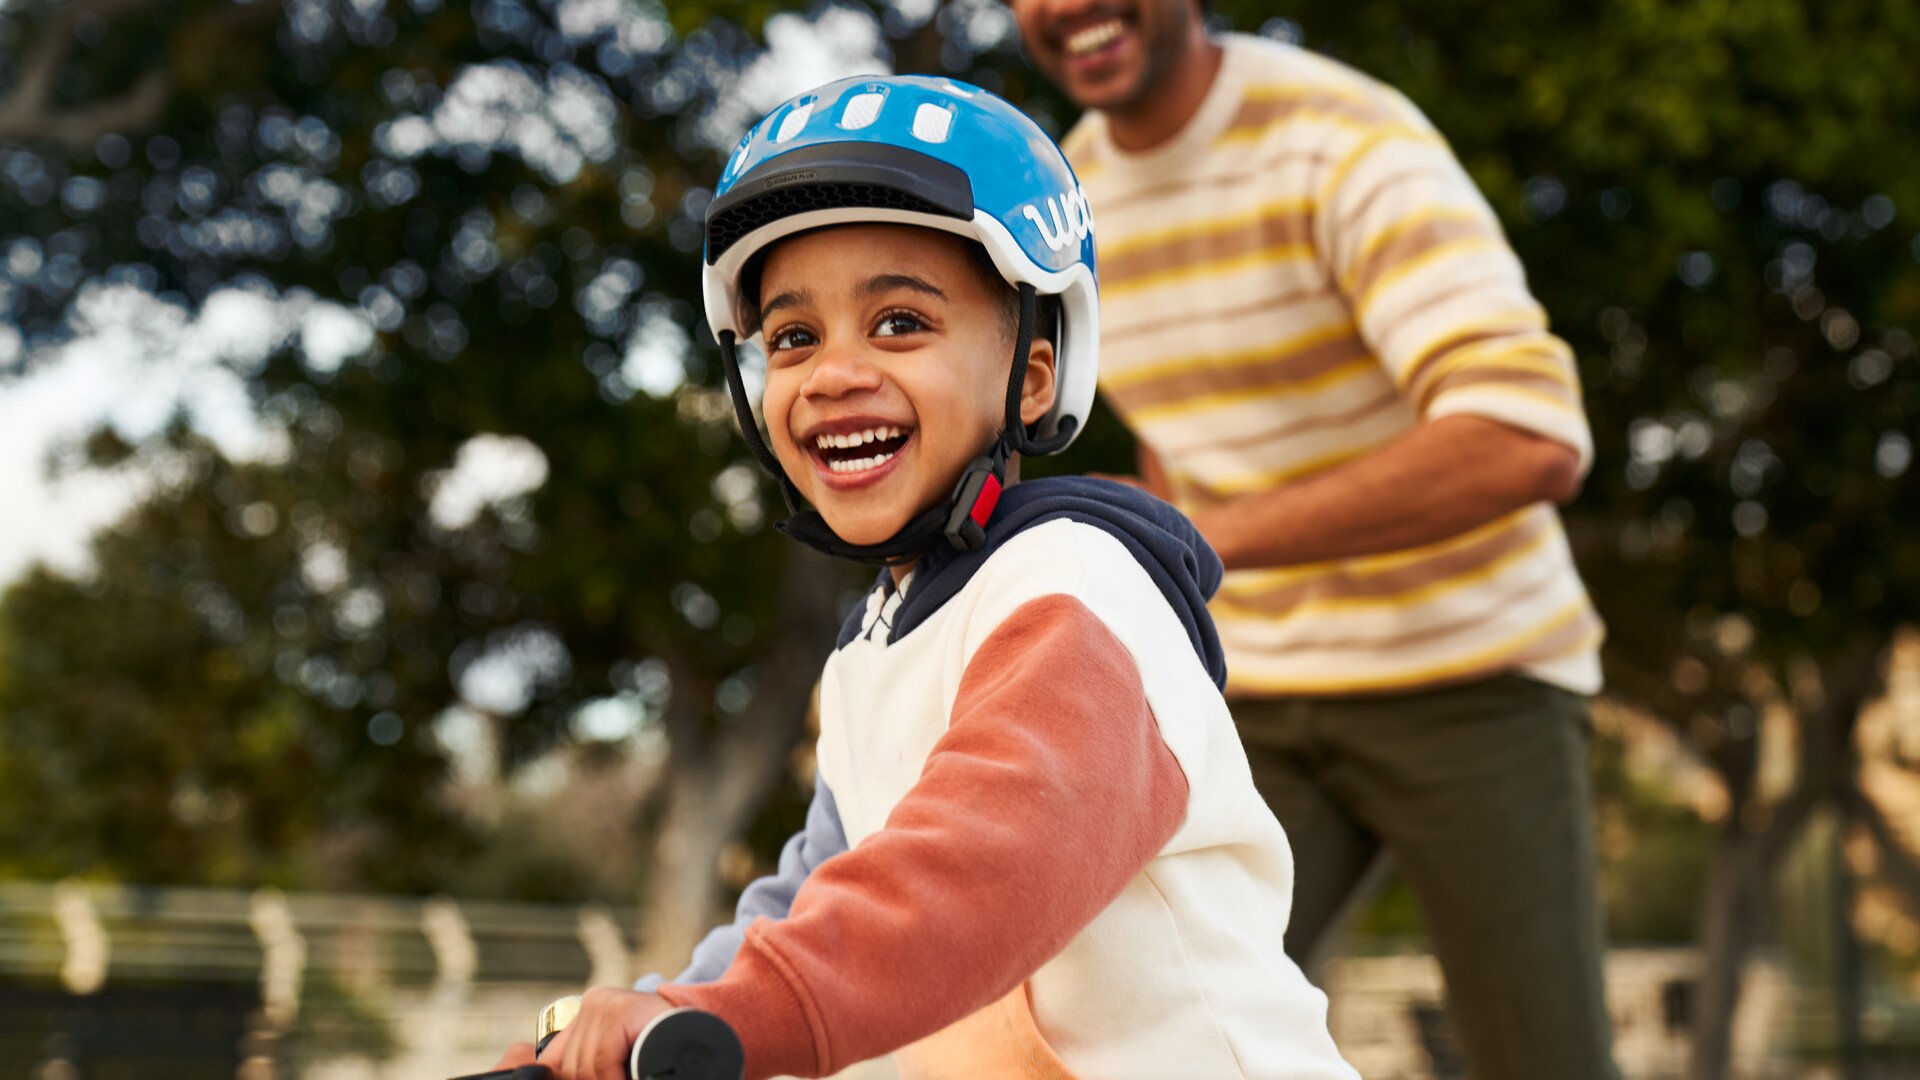 Un enfant sur son vélo avec un casque bleu de la marque woom sourit face à l’appareil photo.